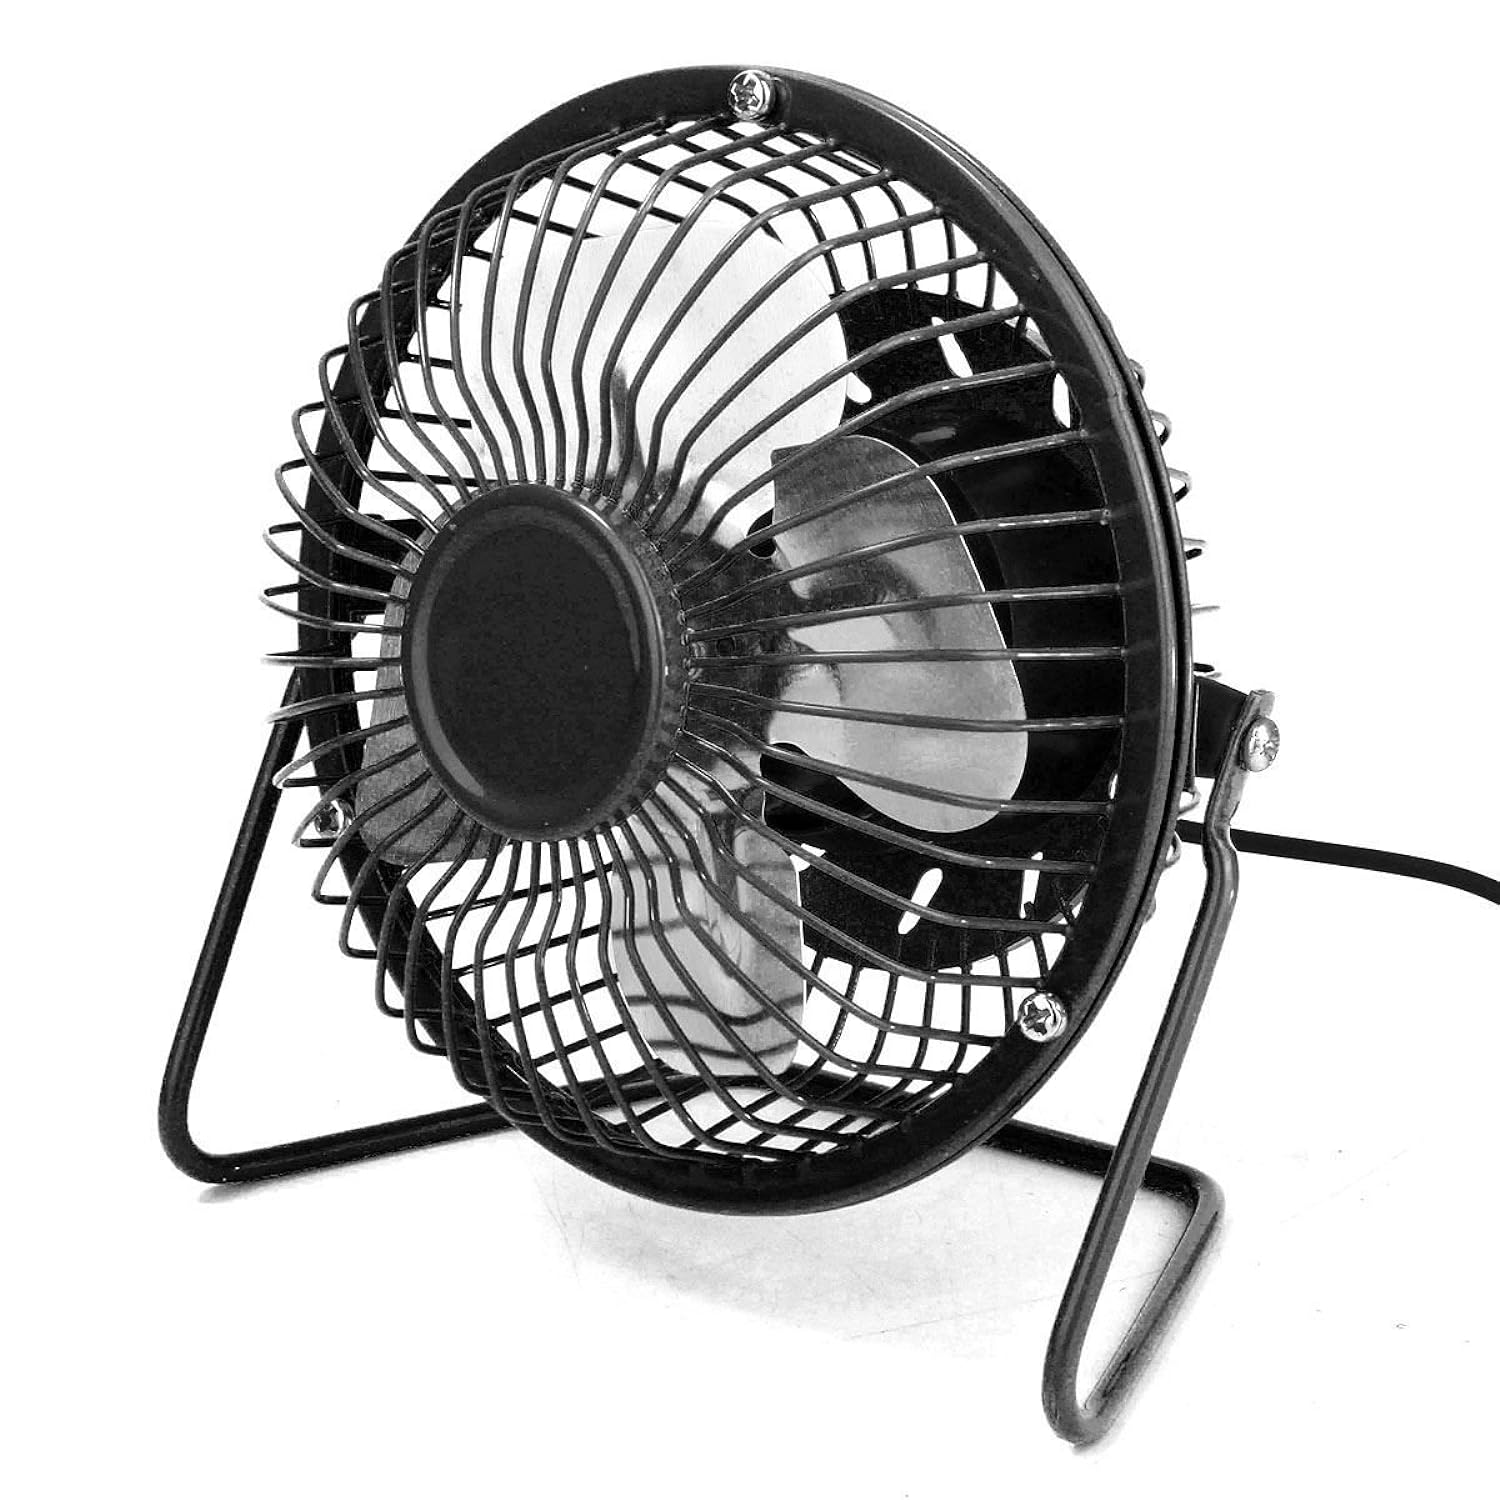 TKM Home 4'' Usb Mini Desk Fan Small Desktop Fan Quiet And Powerful Metal Design Usb Powered (Black)